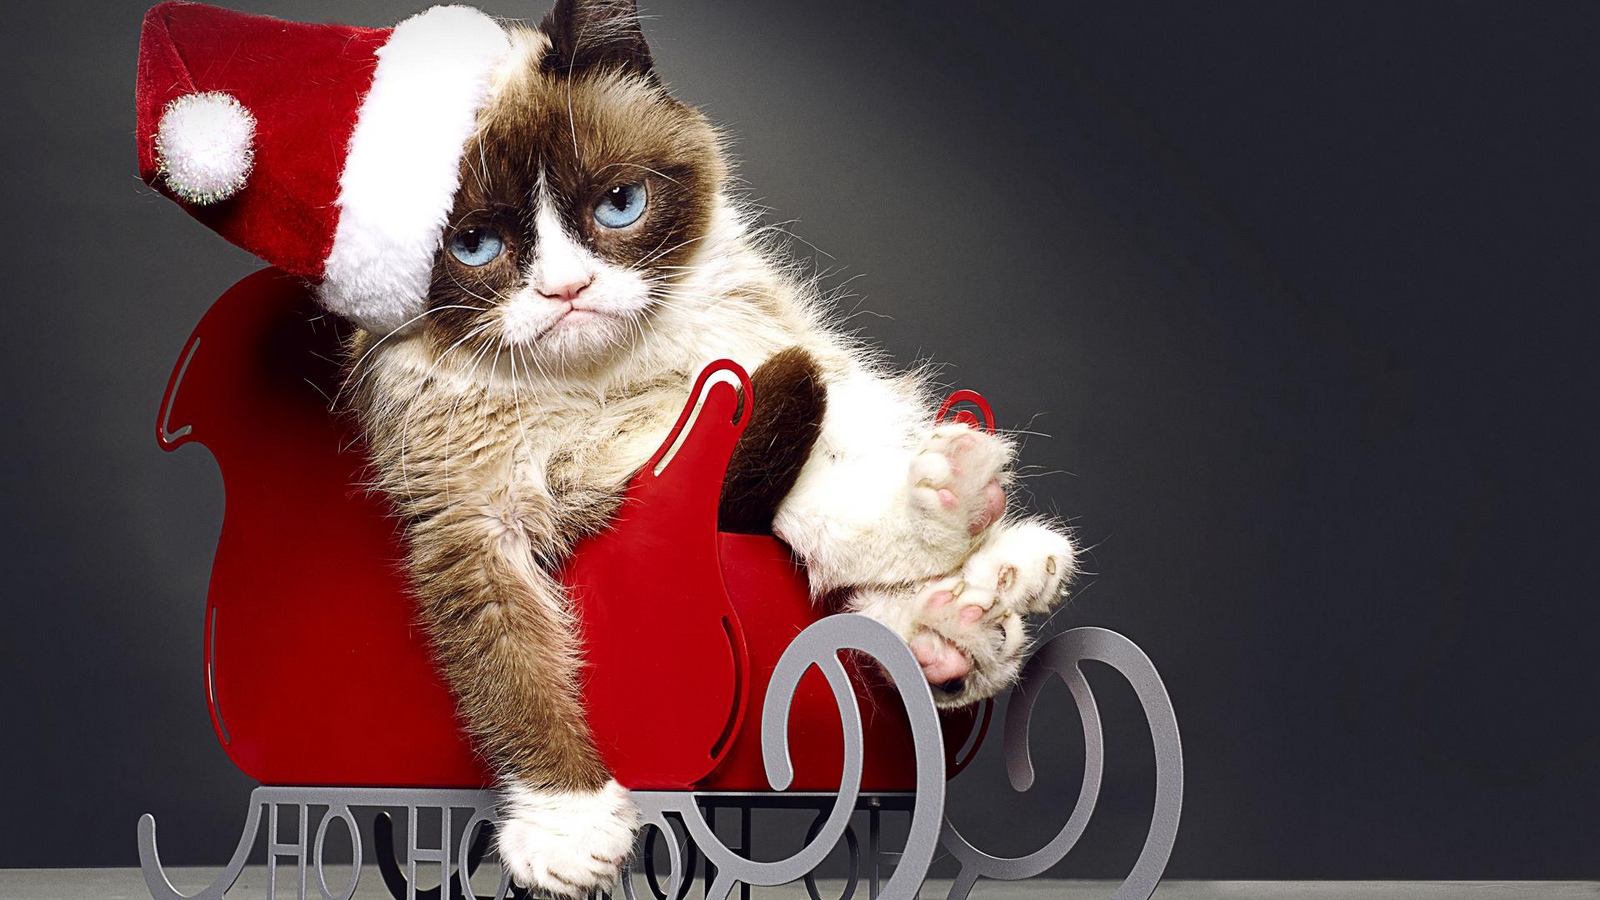 Wallpaper Grumpy Cat, Tardar Sauce, Christmas, Cat - Christmas Grumpy Cat , HD Wallpaper & Backgrounds